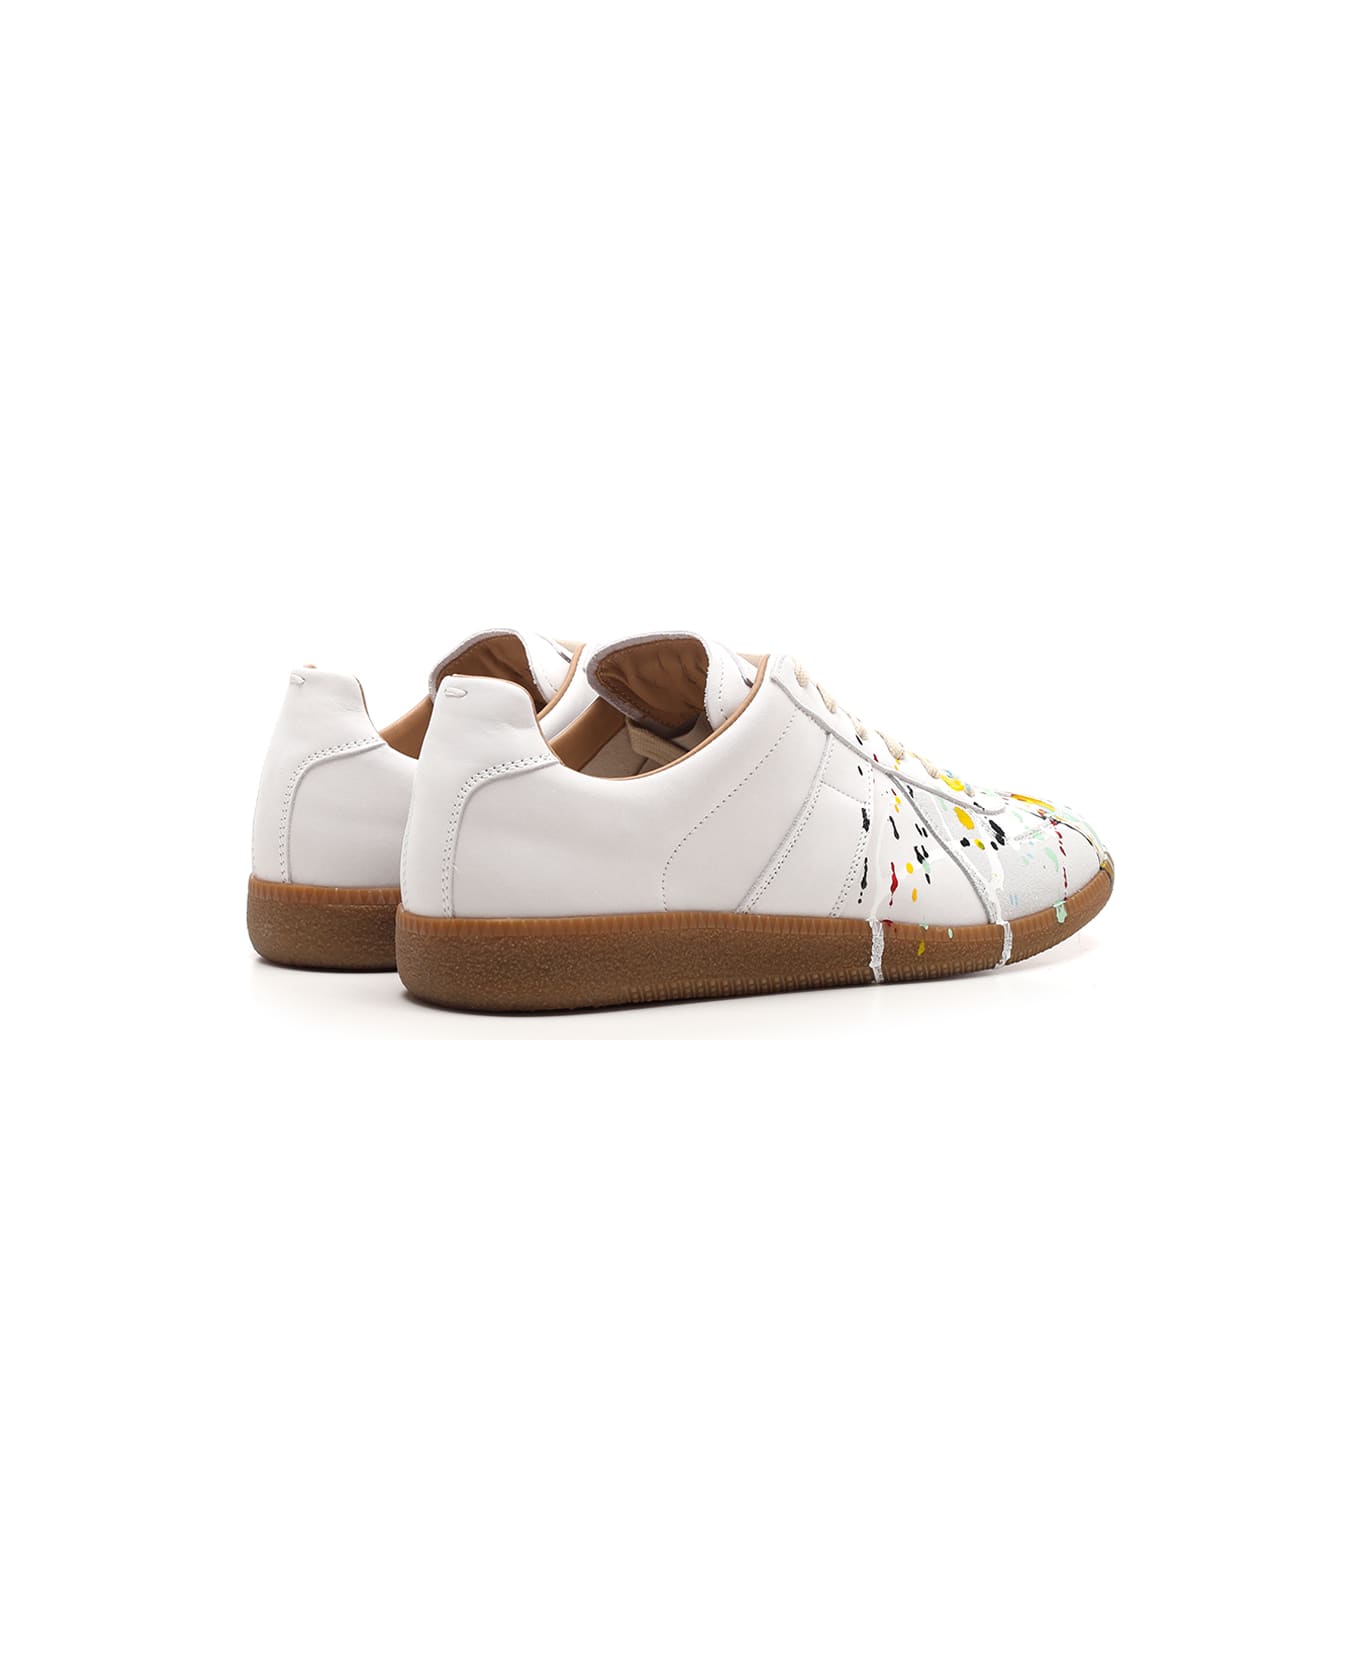 Maison Margiela White 'replica' Sneakers With Multicolor Drops - White